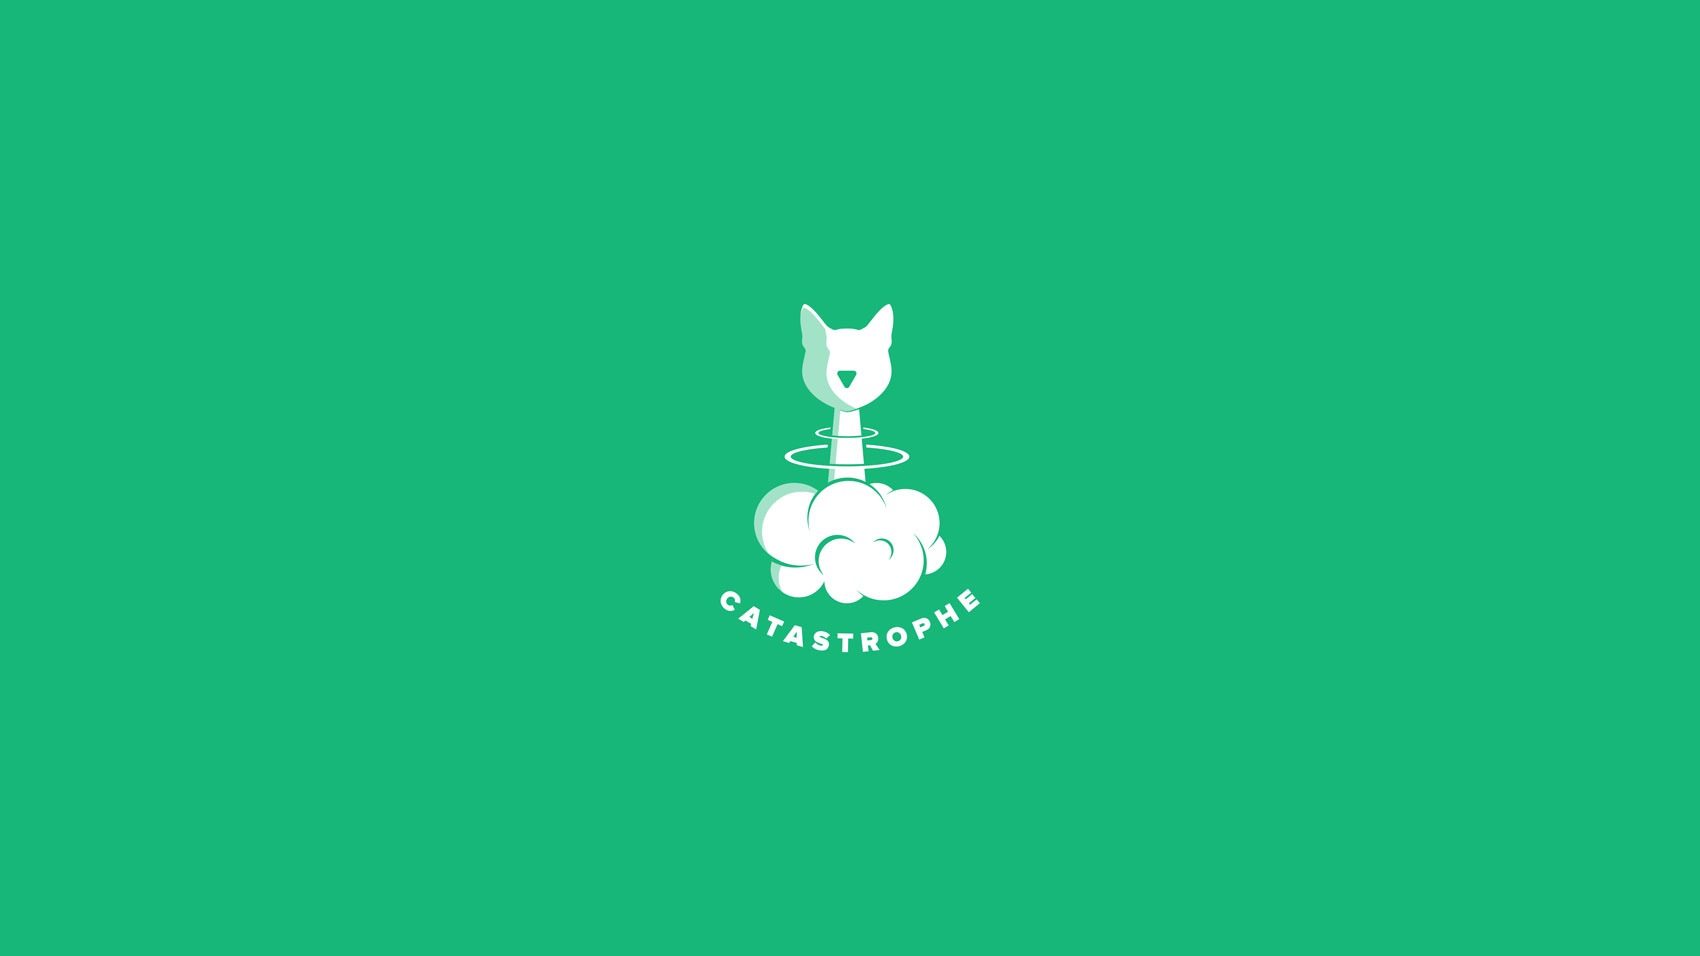 Catastrophe logo design